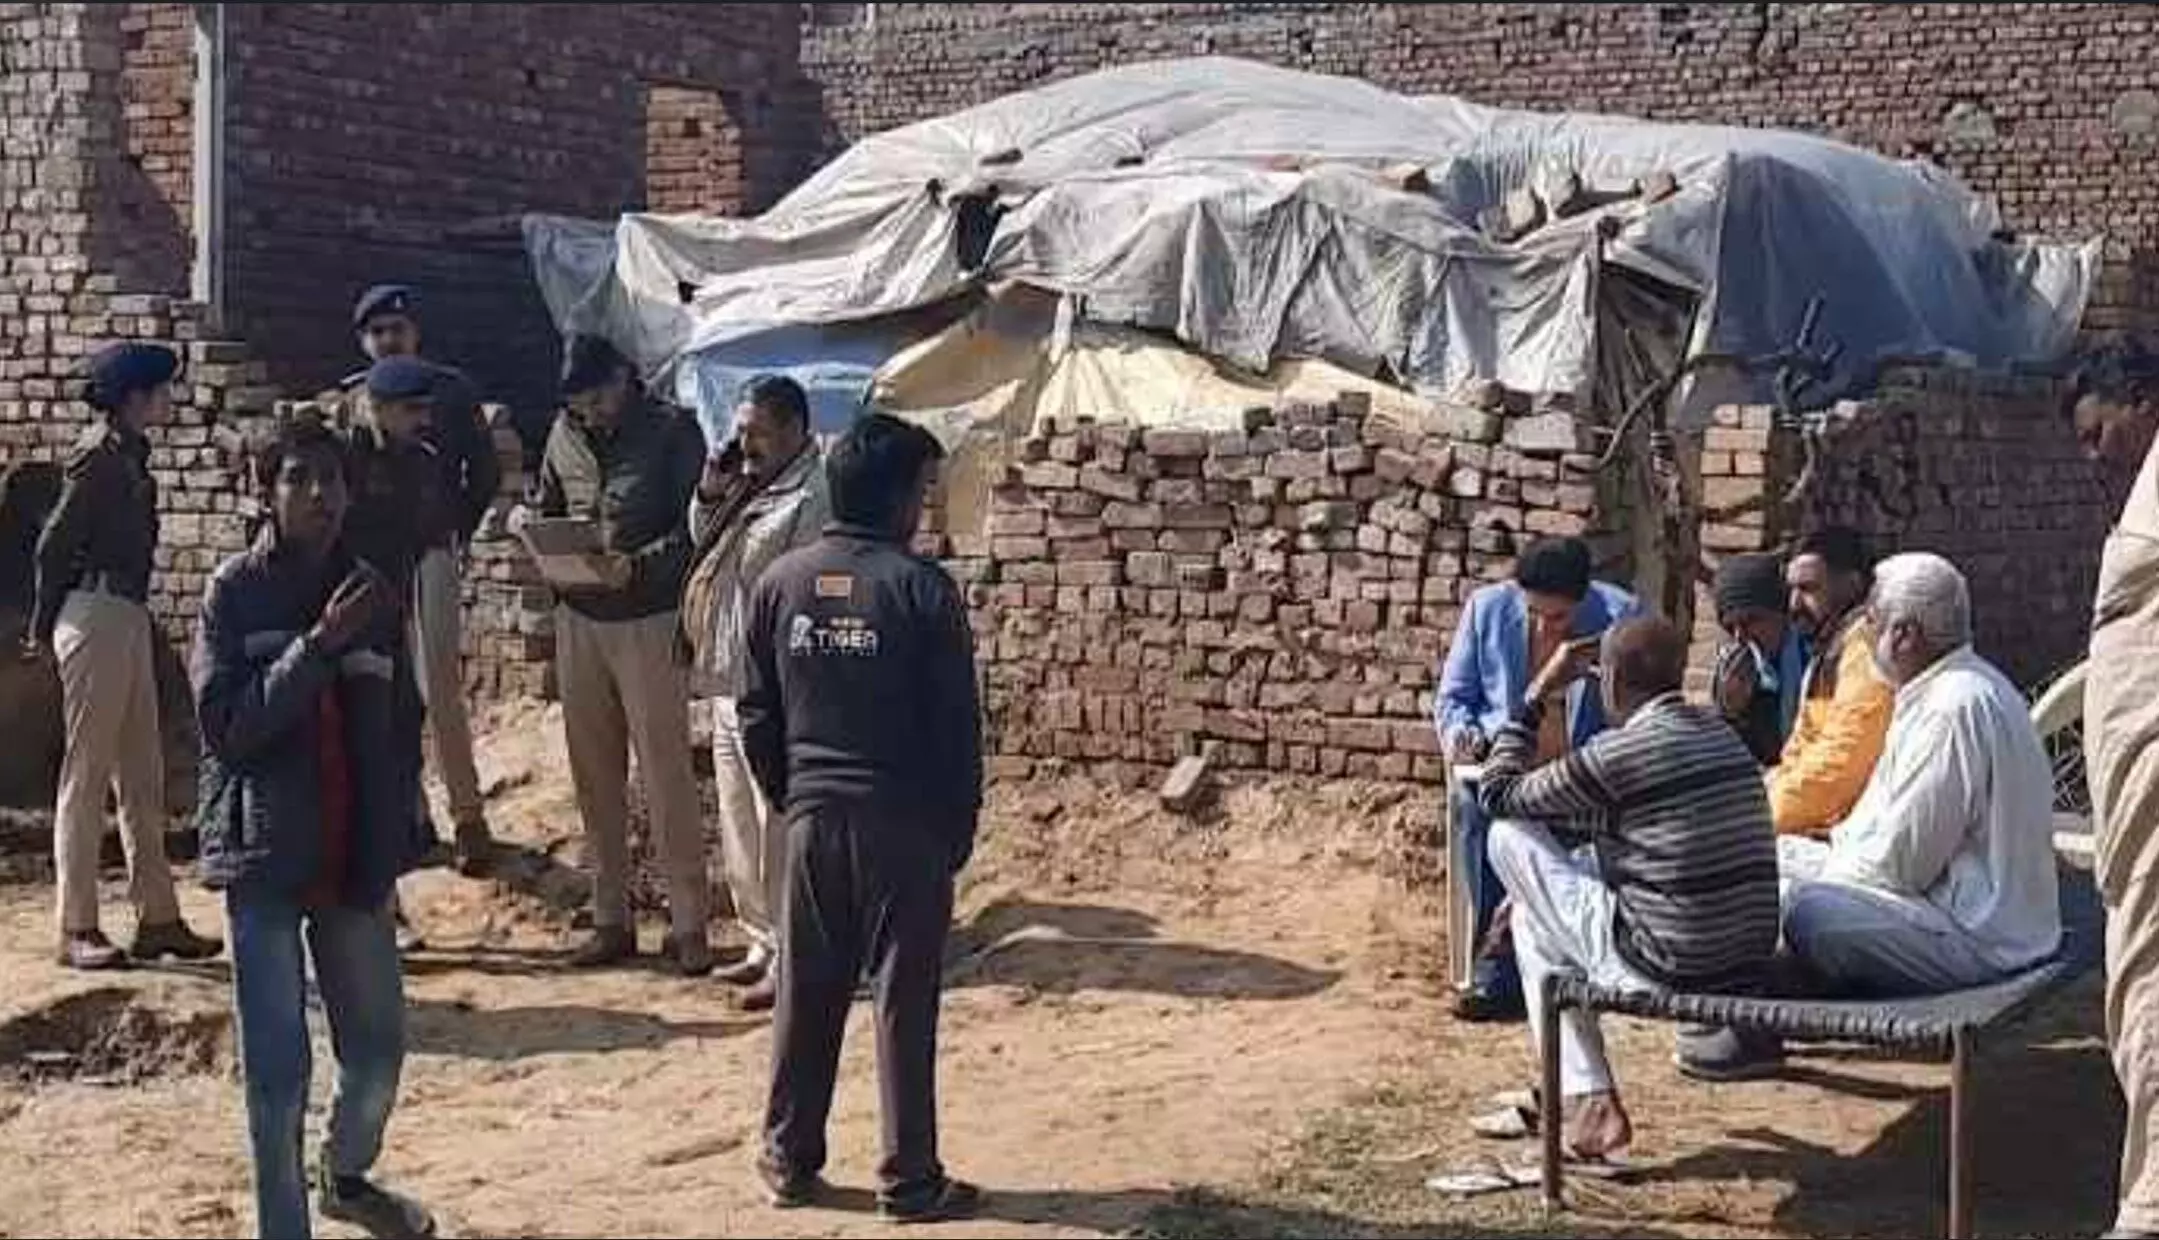 Haryana Crime News: हरियाणा में युवक को बेहरमी से उतारा मौत के घाट, मौके पर पहुंची पुलिस टीम